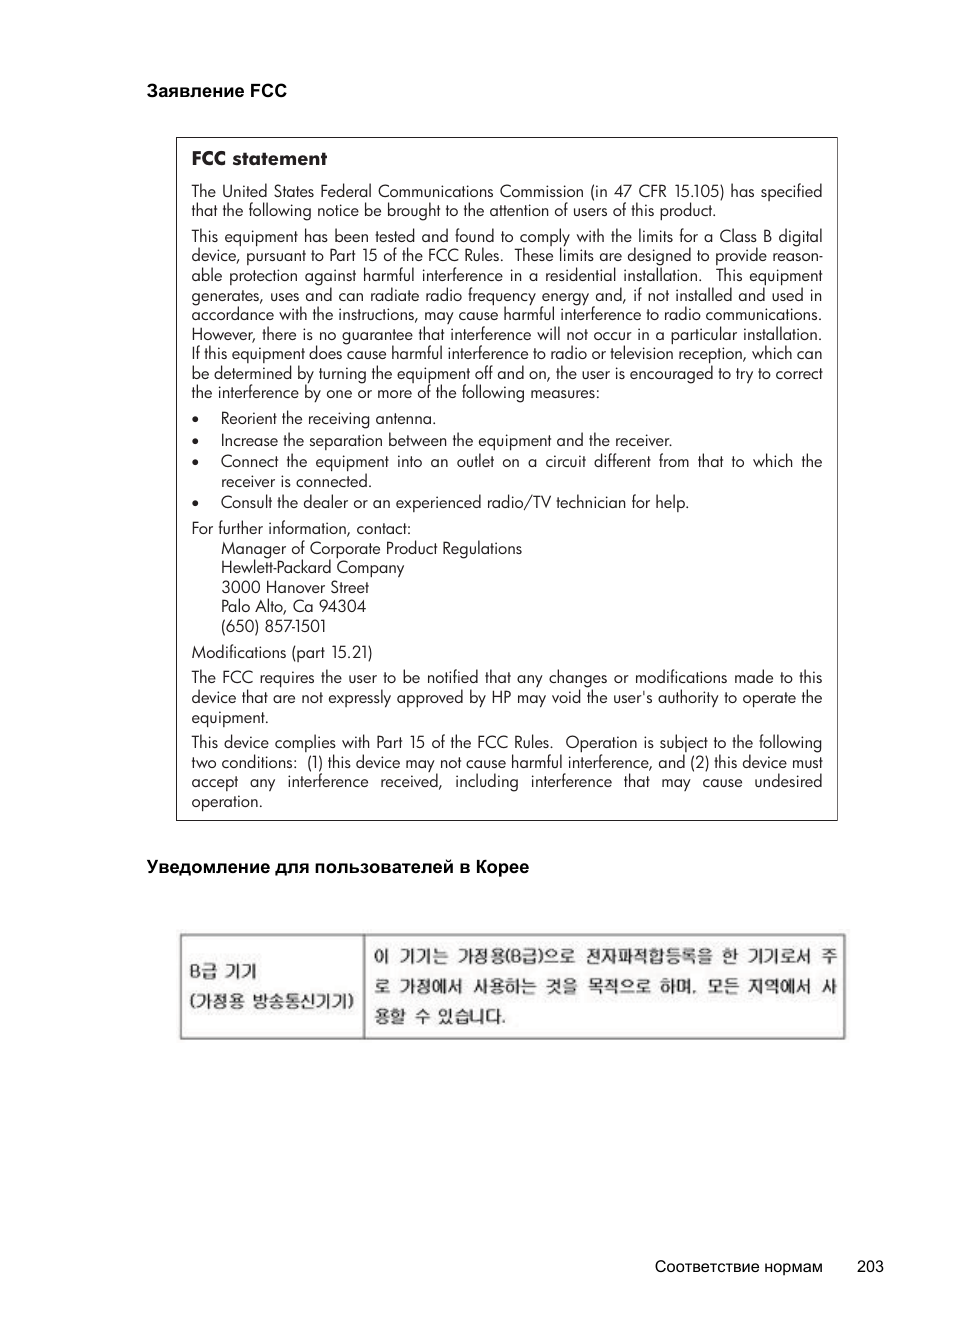 Заявление fcc, Уведомление для пользователей в корее | Инструкция по эксплуатации HP Officejet Pro 8600 | Страница 207 / 294